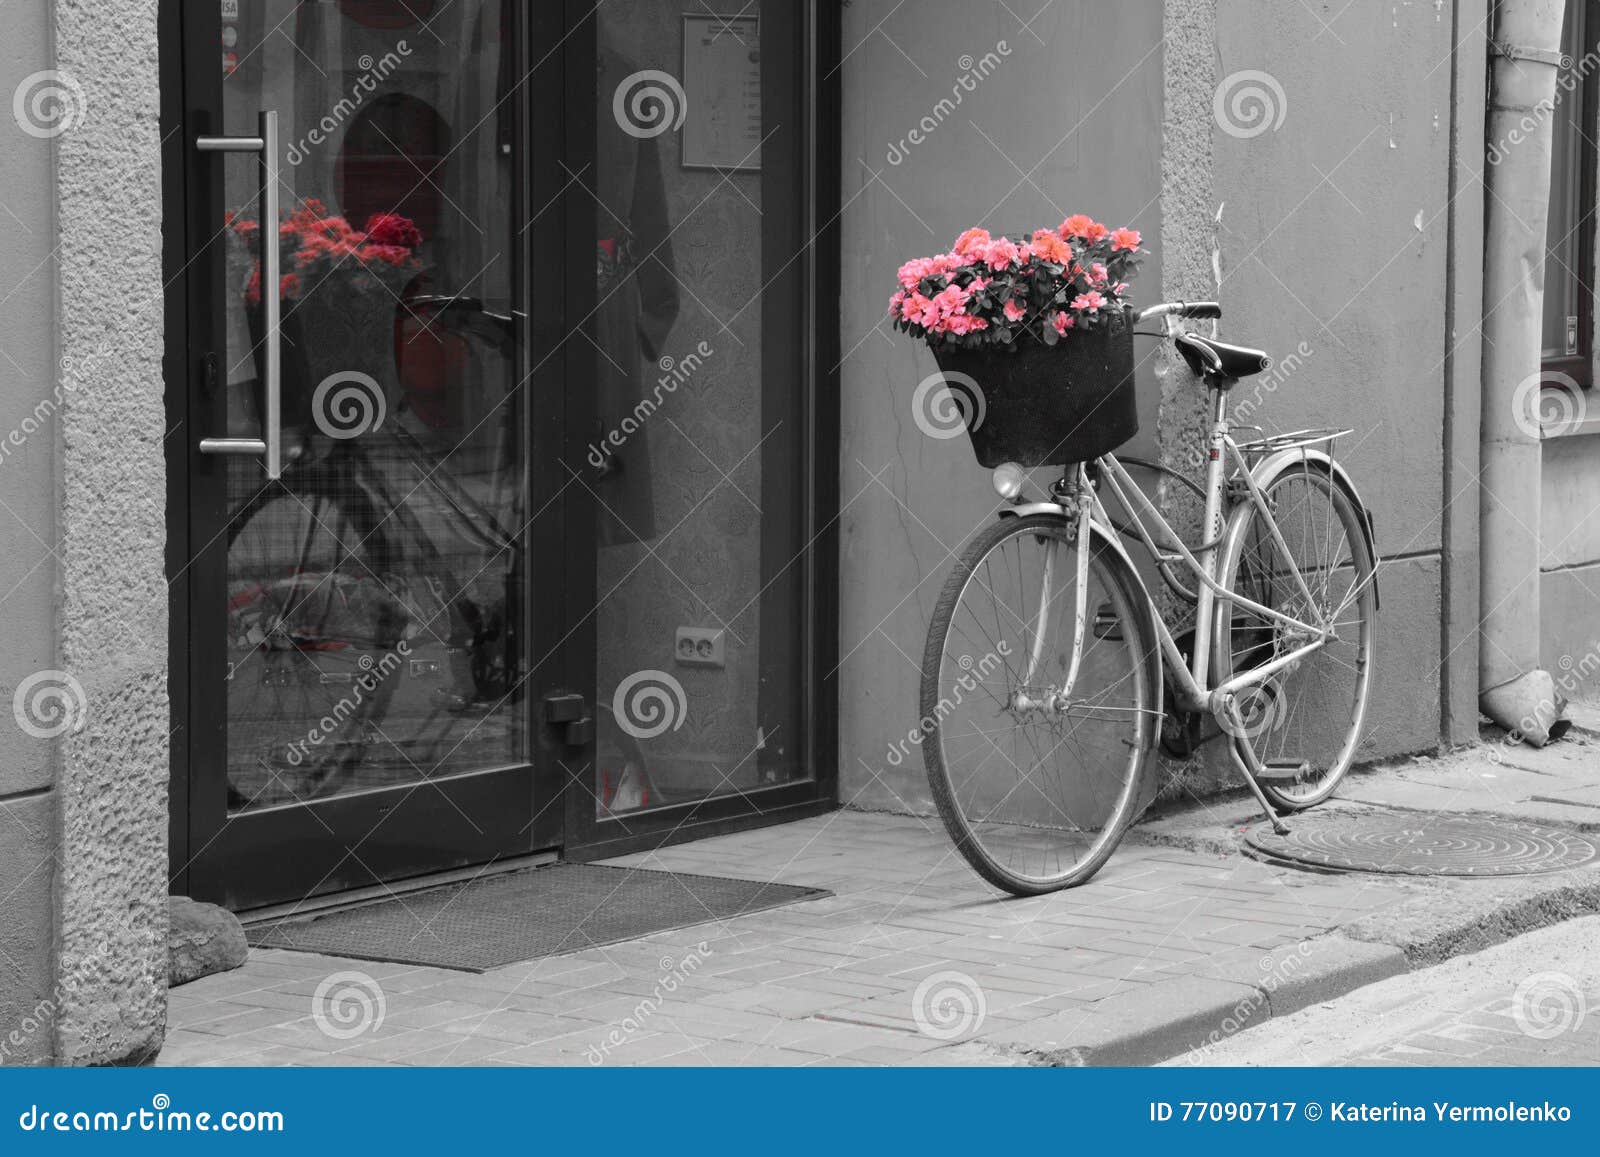 花篮自行车素材-花篮自行车图片-花篮自行车素材图片下载-觅知网